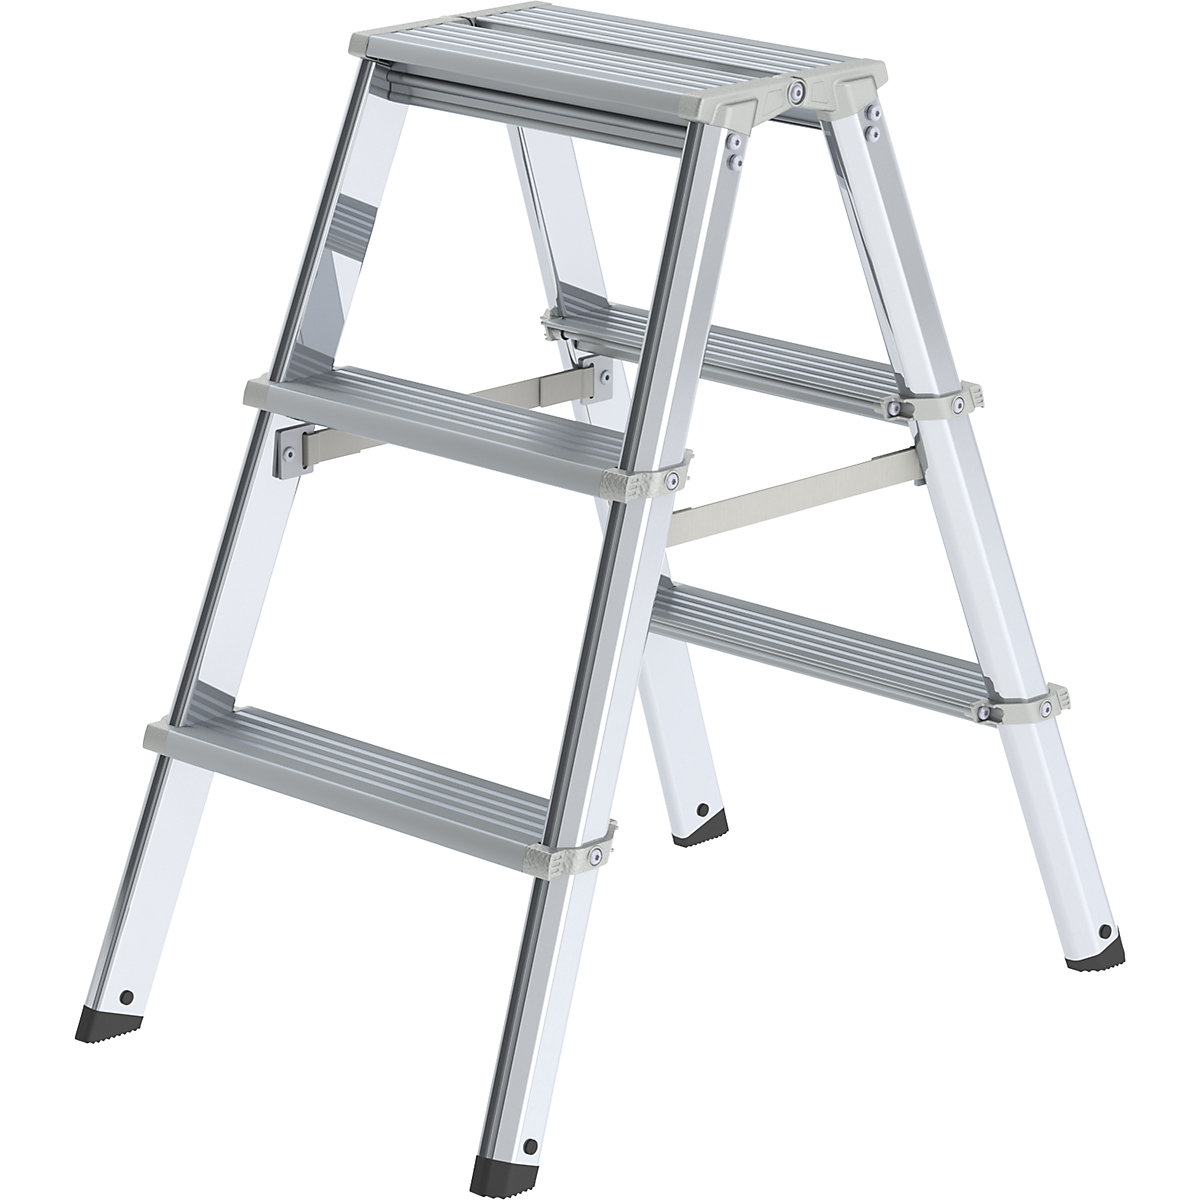 MUNK – Escalera tipo tijera de peldaños planos de aluminio, de ascenso por ambos lados, con larguero ergonómico, 2 x 3 peldaños, altura de trabajo 2250 mm